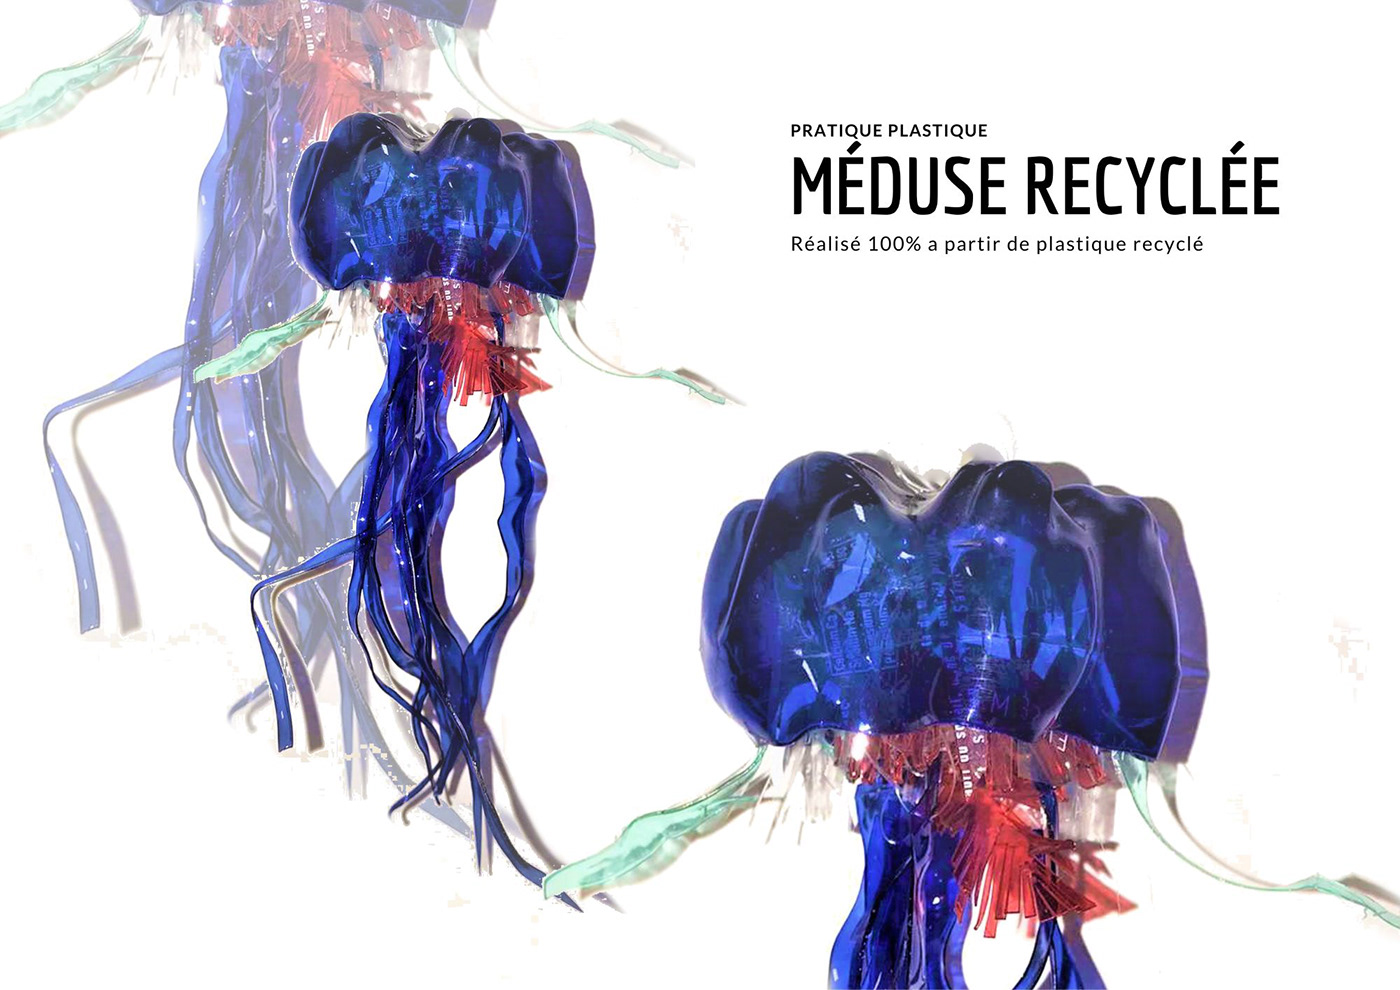 dechets objet plastique pratique plastique recyclage recycle